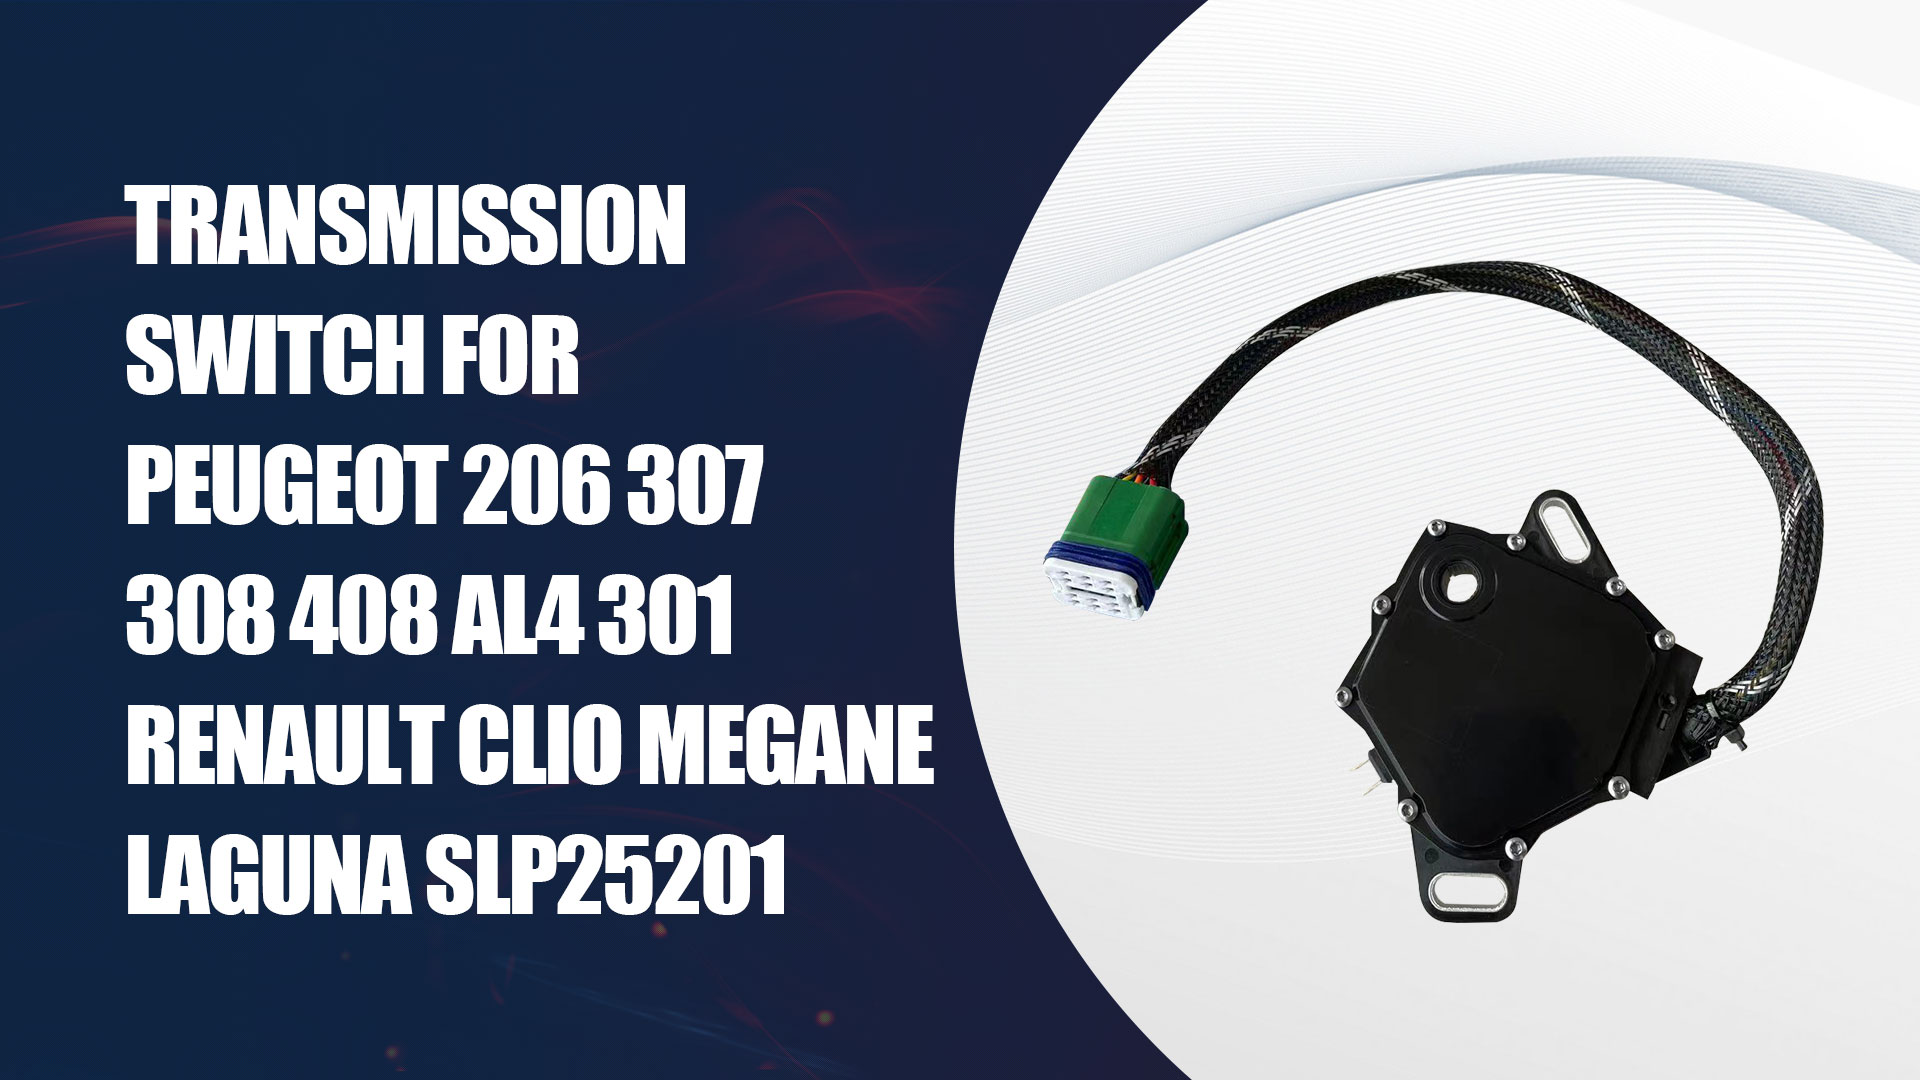 مفتاح نقل الحركة لبيجو 206307308408 Al4301 رينو كليو ميجان لاجونا Slp25201